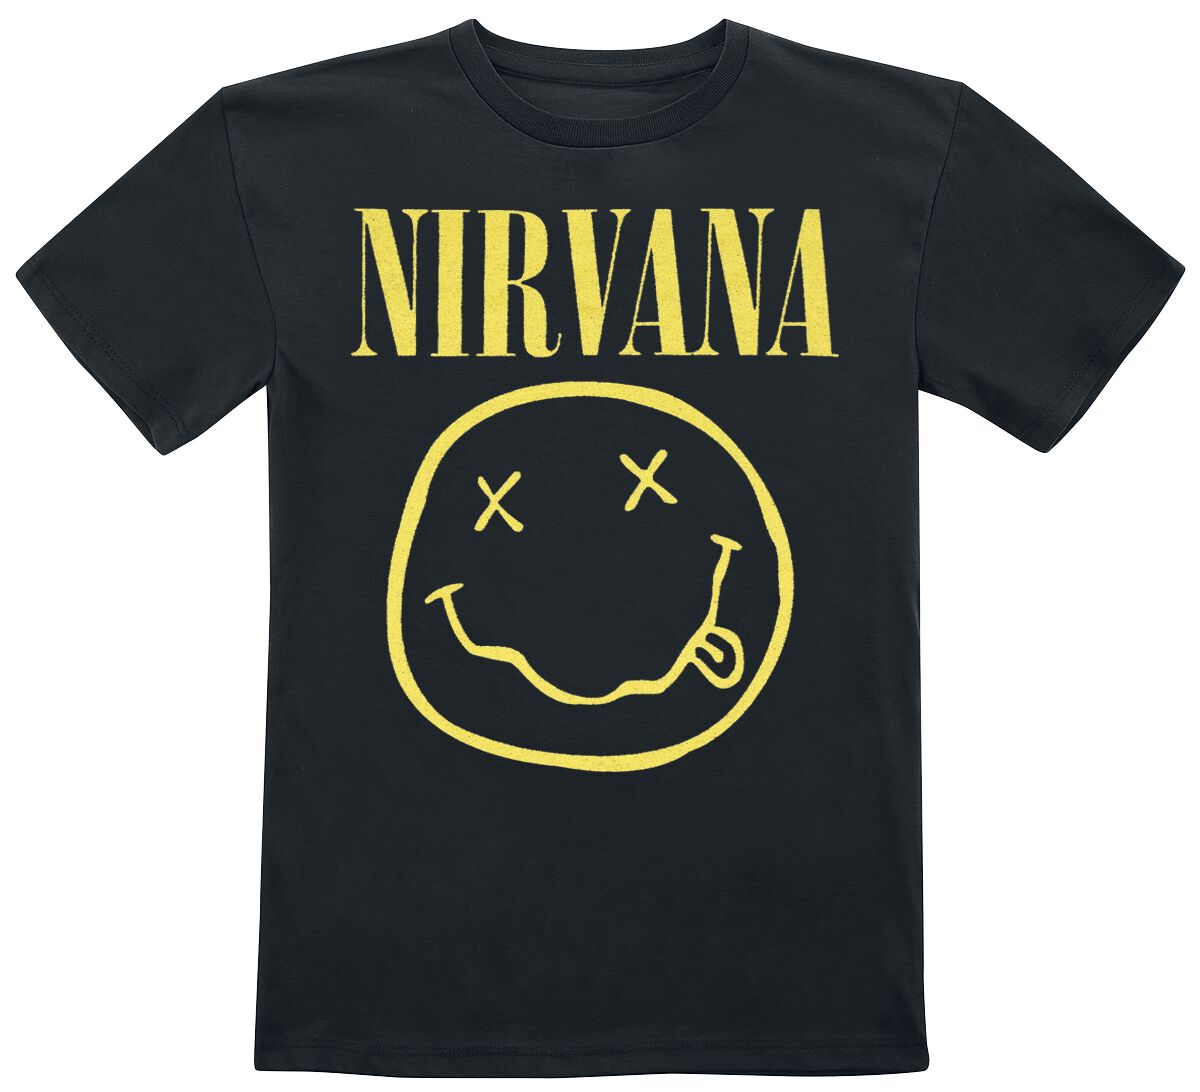 Nirvana T-Shirt für Kinder - Kids - Smiley - für Mädchen & Jungen - schwarz  - Lizenziertes Merchandise!